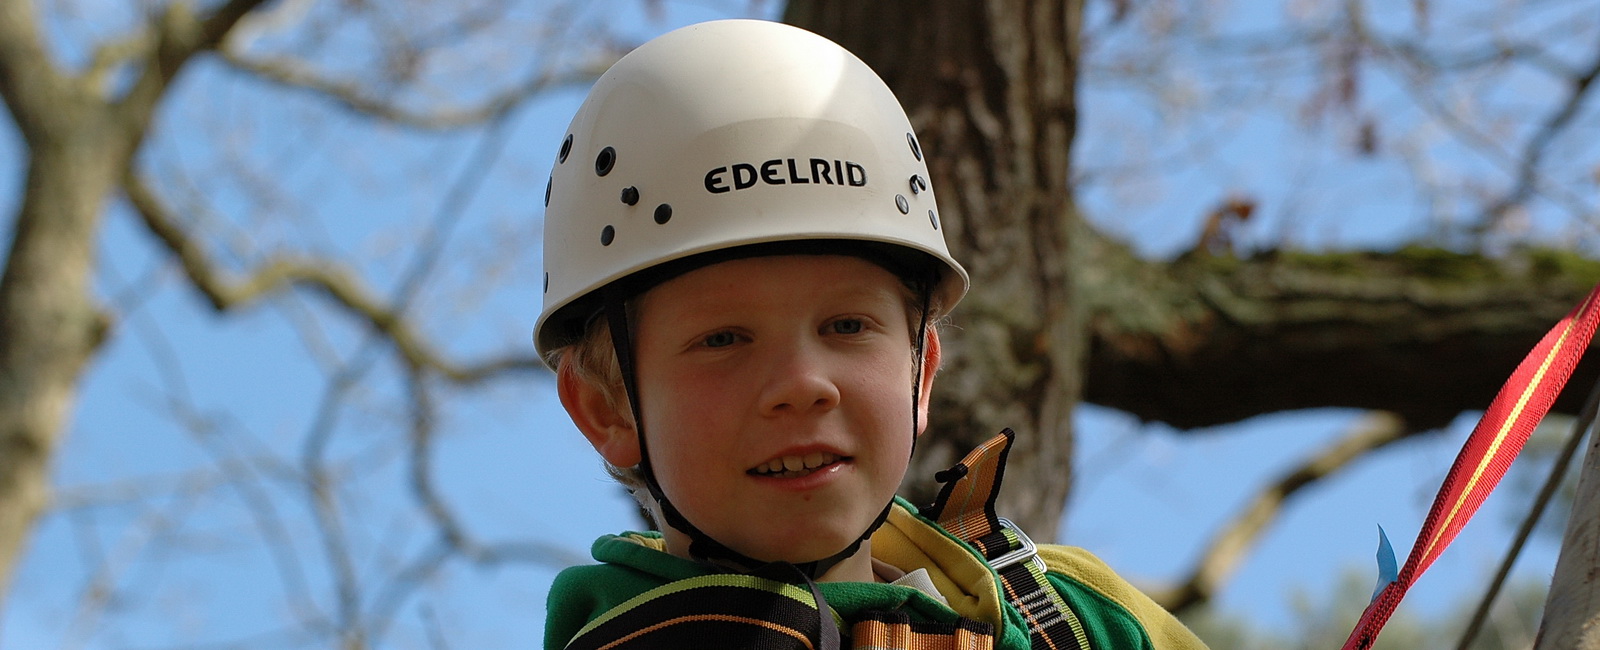 Junge mit Helm beim Klettern